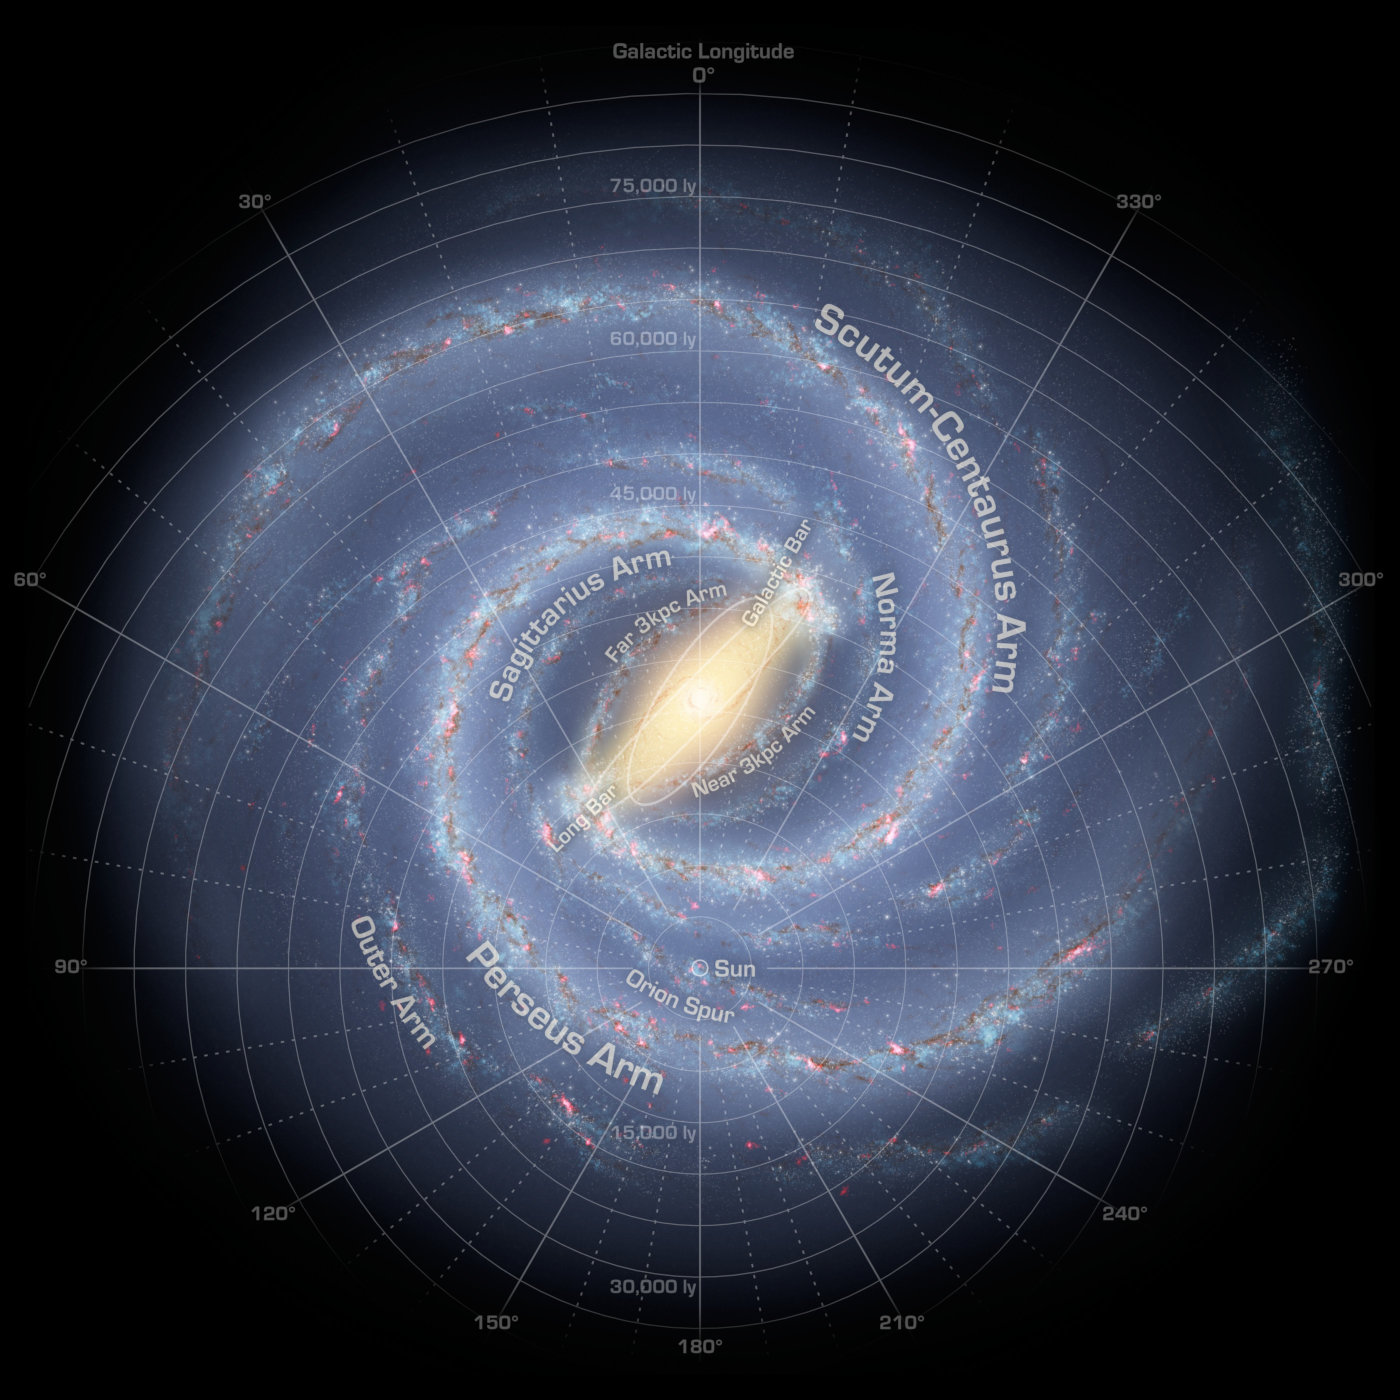 Die vorhergehende quadratische Darstellung der Milchstraße, diesmal mit einem Polarkoordinatensystem. Das Polarkoordinatensystem, zentriert auf unserer Sonne, teilt die Karte in 10-Grad-Abschnitte und 5000-Lichtjahre-Kreise ein.